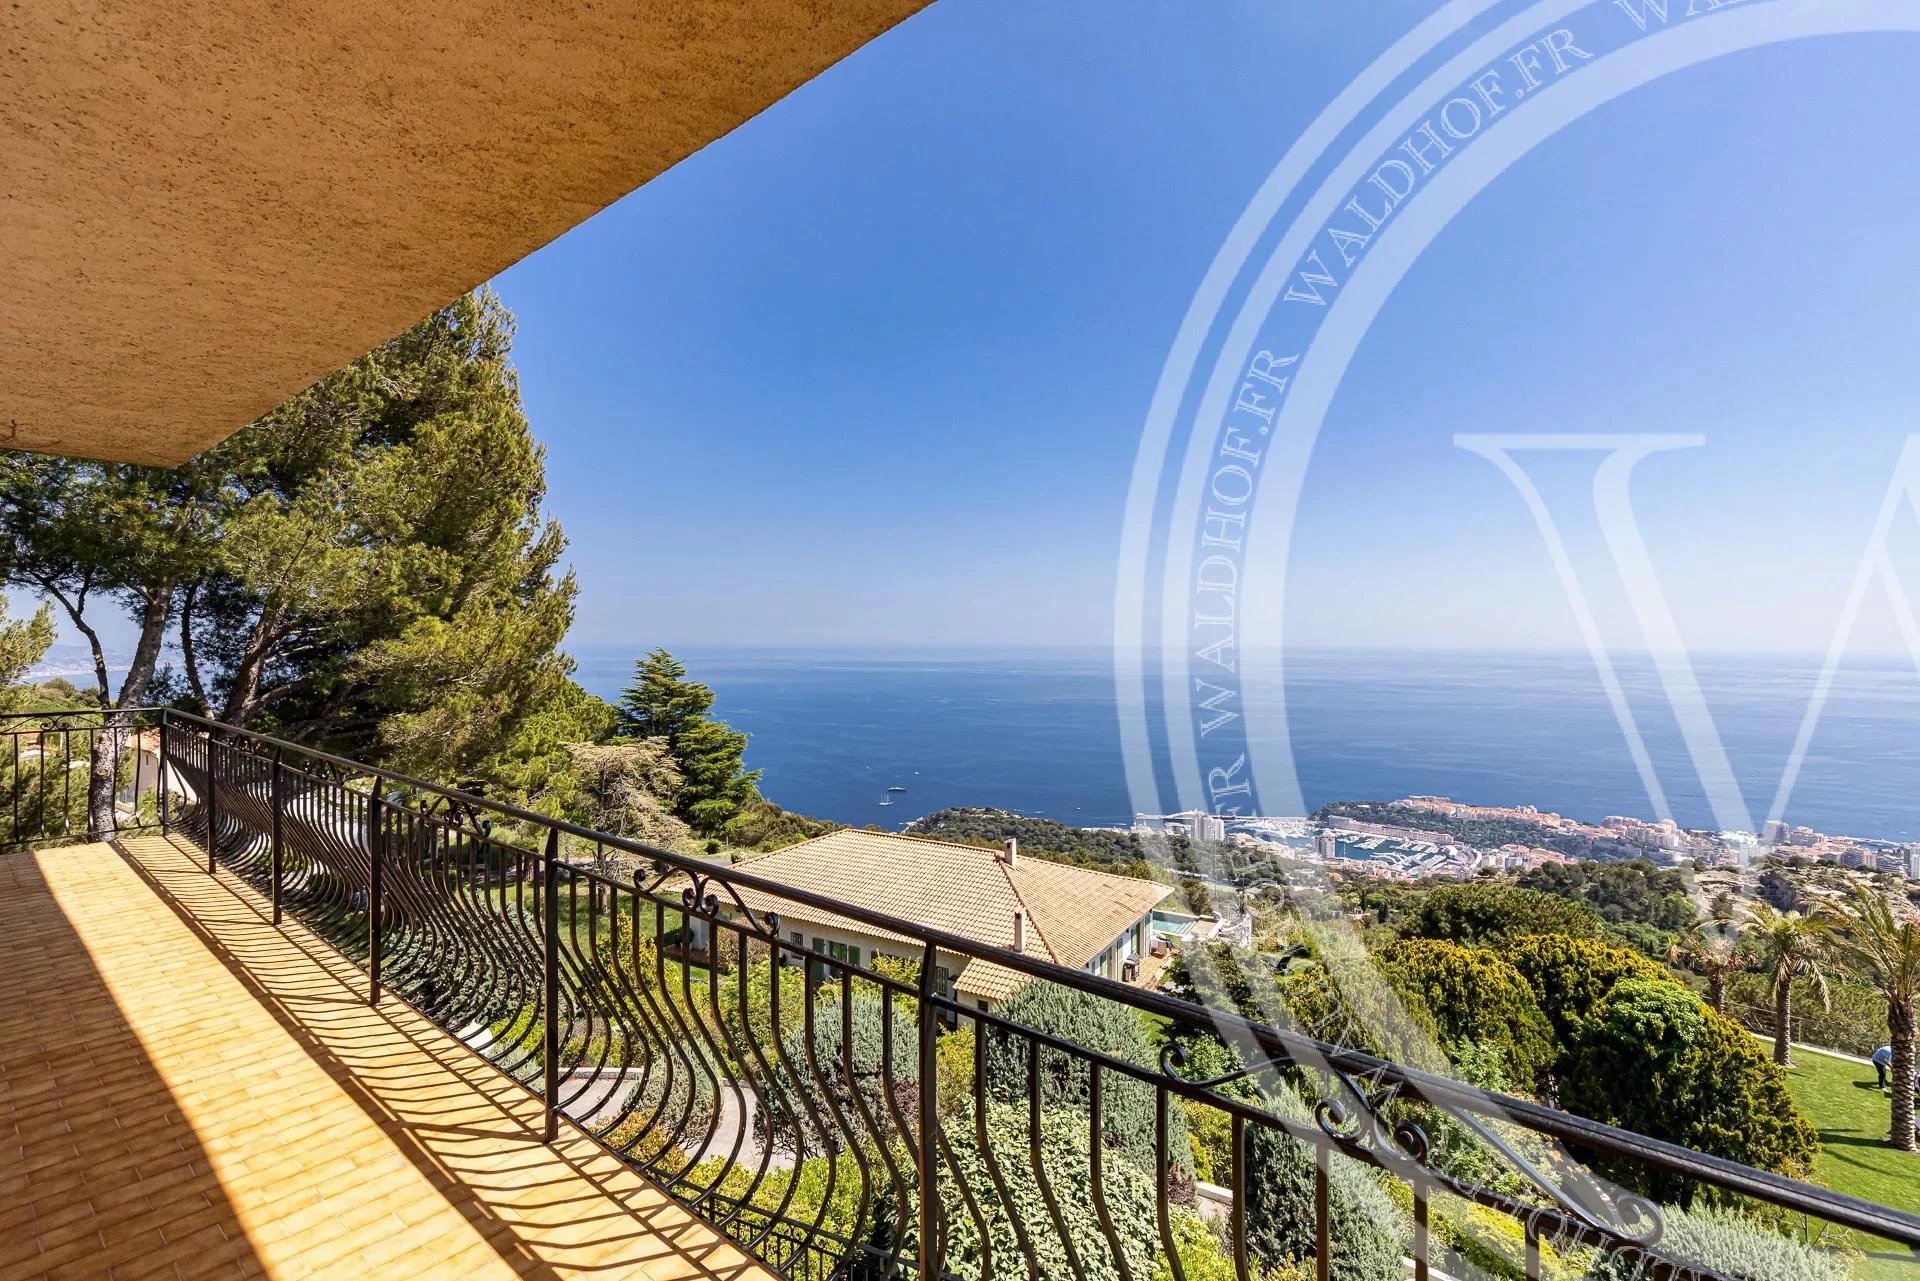 Propriété dans un domaine privé avec vue panoramique sur la mer et Monaco à couper le souffle.